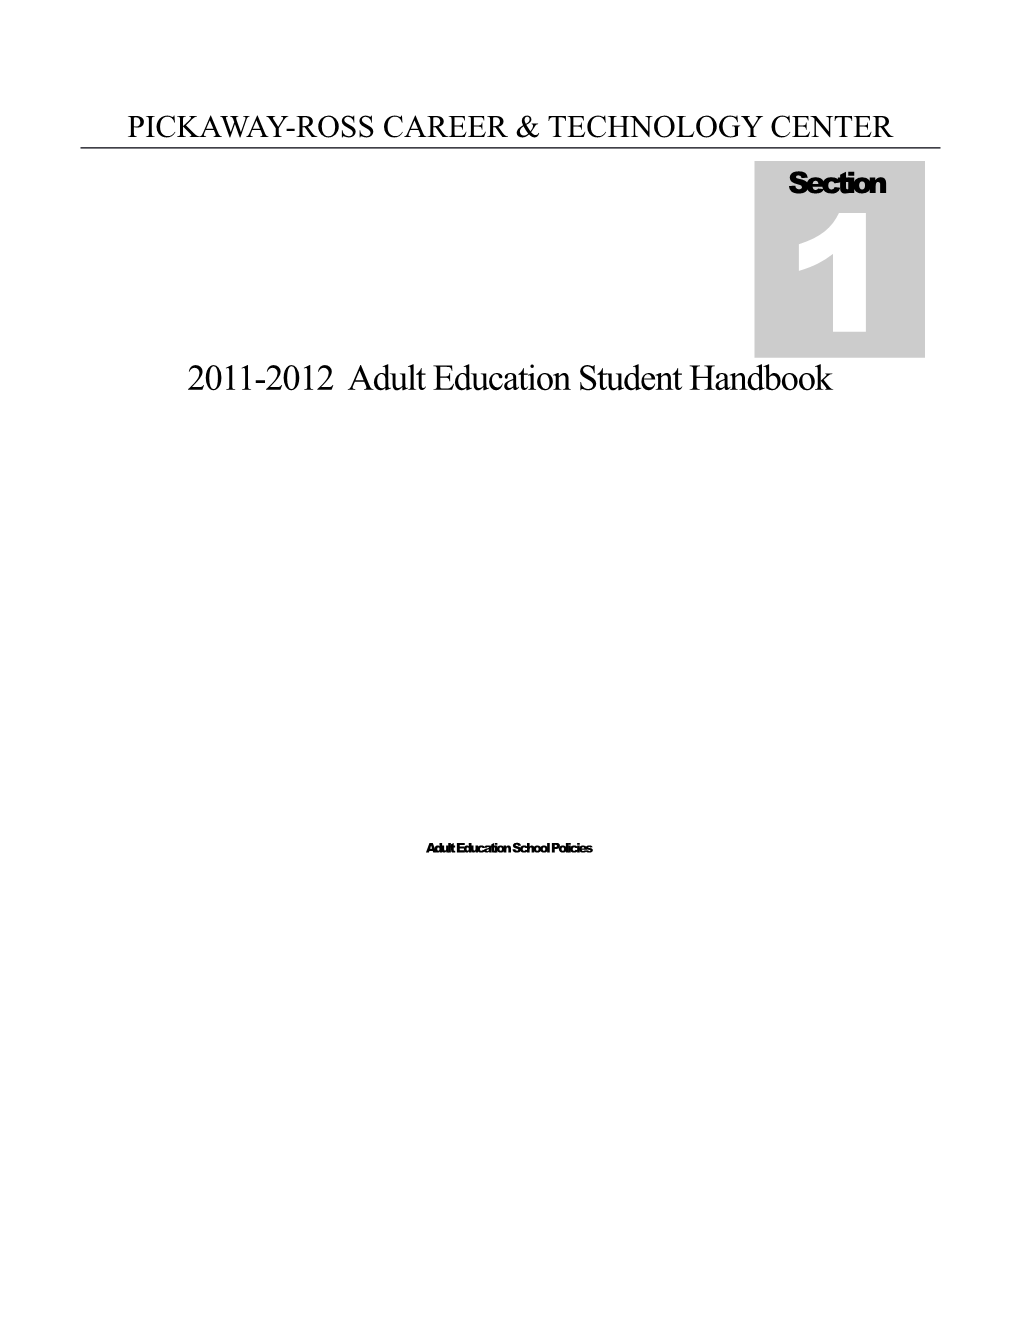 2011-2012 Adult Education Student Handbook